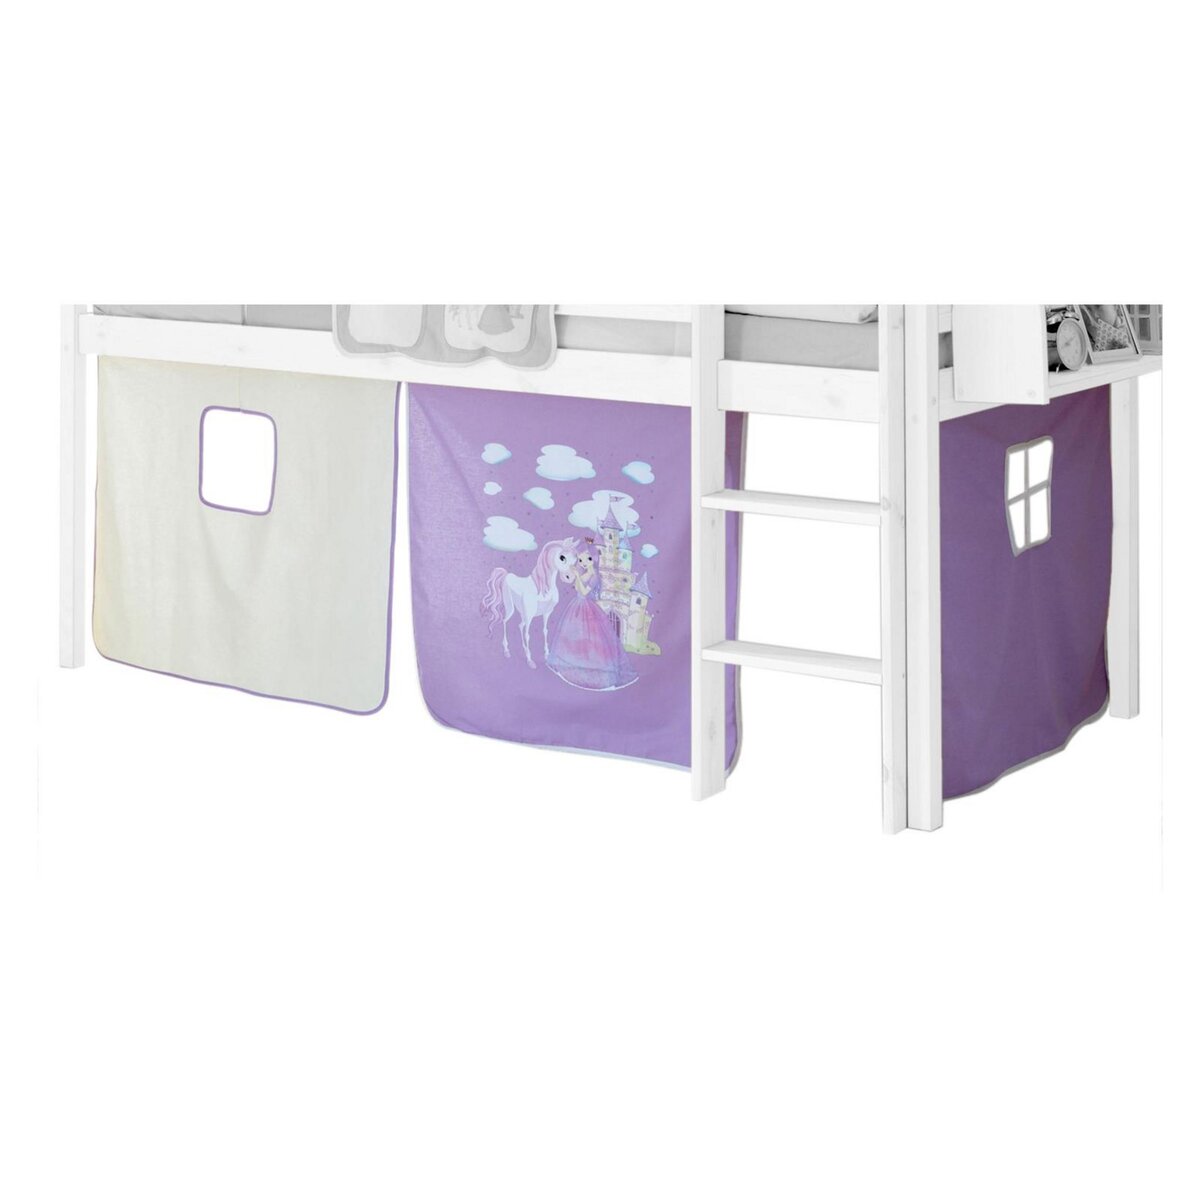 IDIMEX Rideaux pour lit superposé lit surélevé cabane tente coton motif princesse lilas et blanc